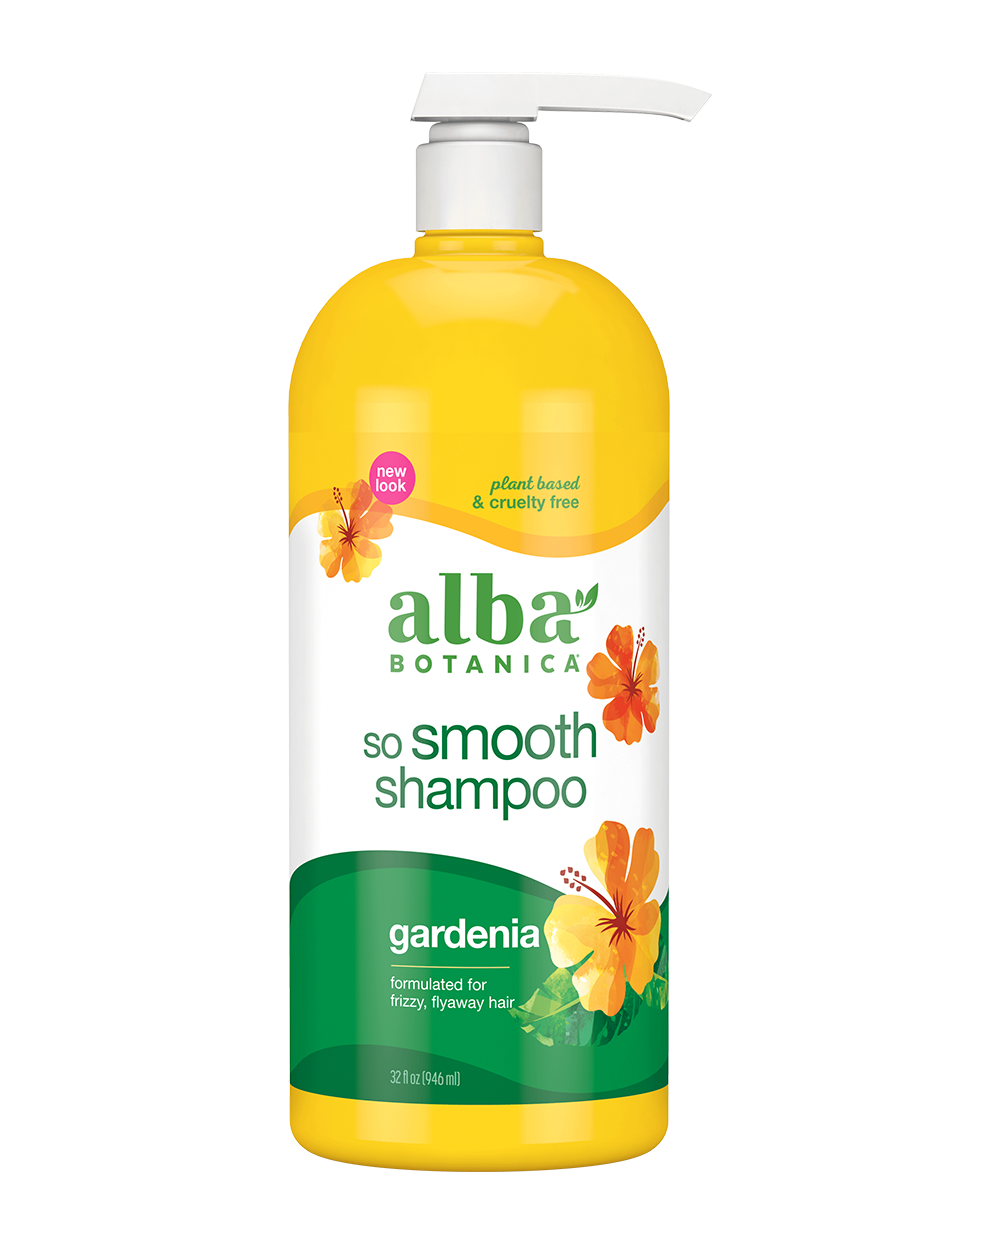 alba botanica so smooth shampoo